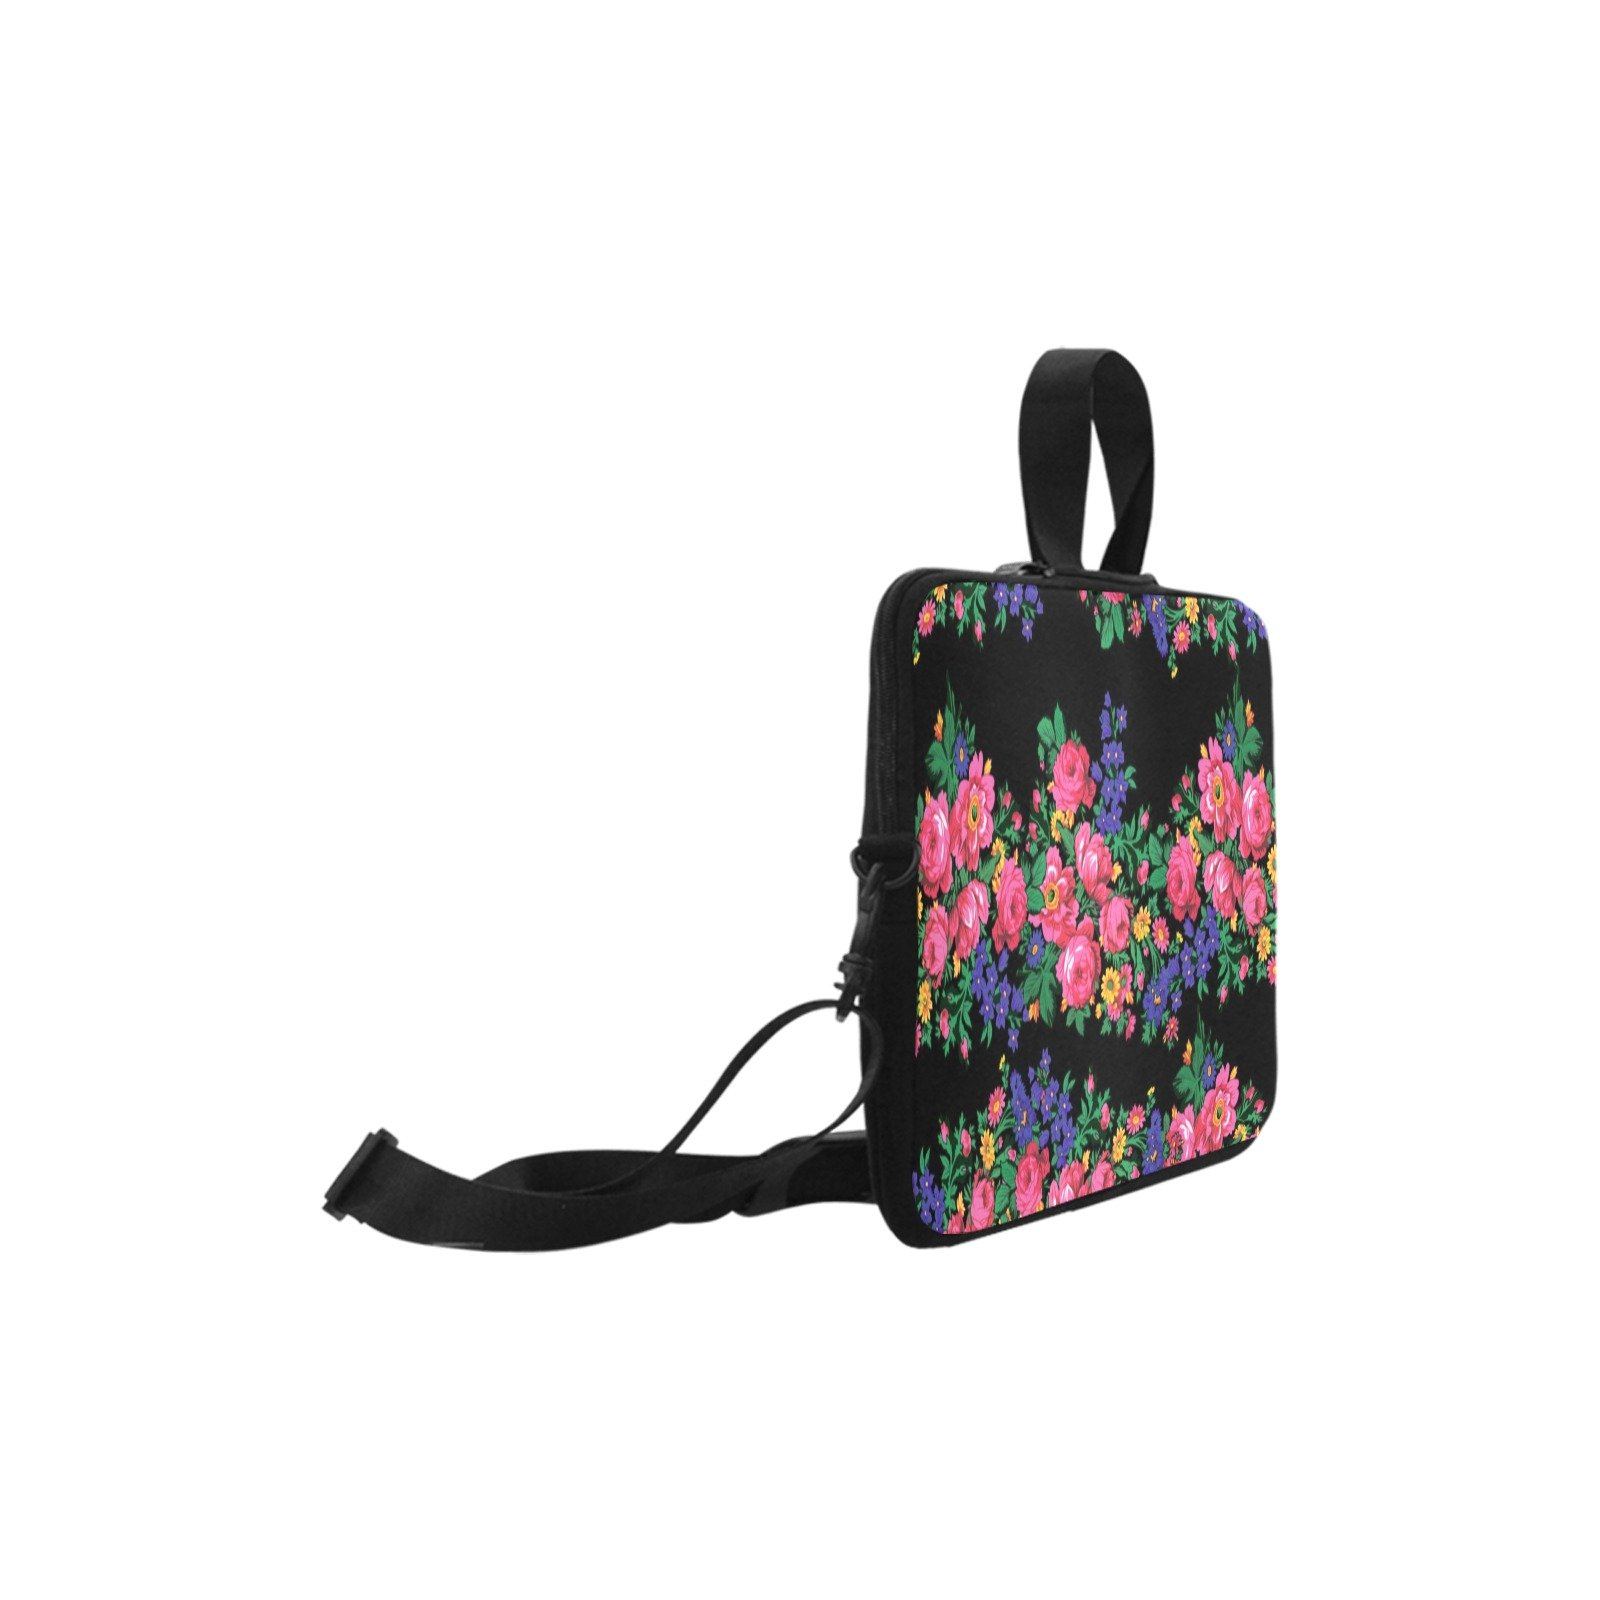 Kokum's Revenge Black Laptop Handbags 10" bag e-joyer 